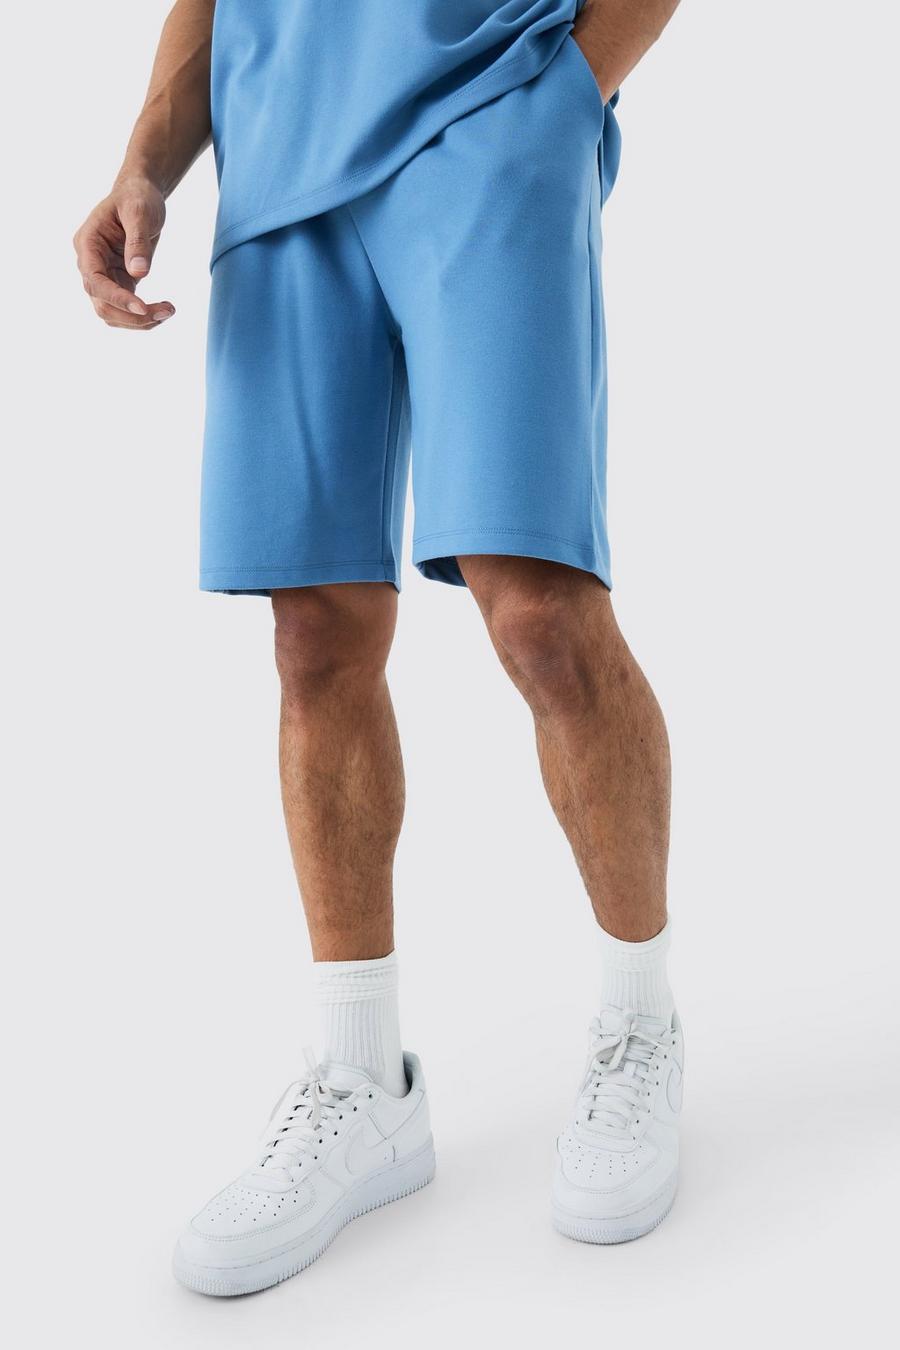 Pantalón corto holgado de largo medio Premium súper grueso, Slate blue